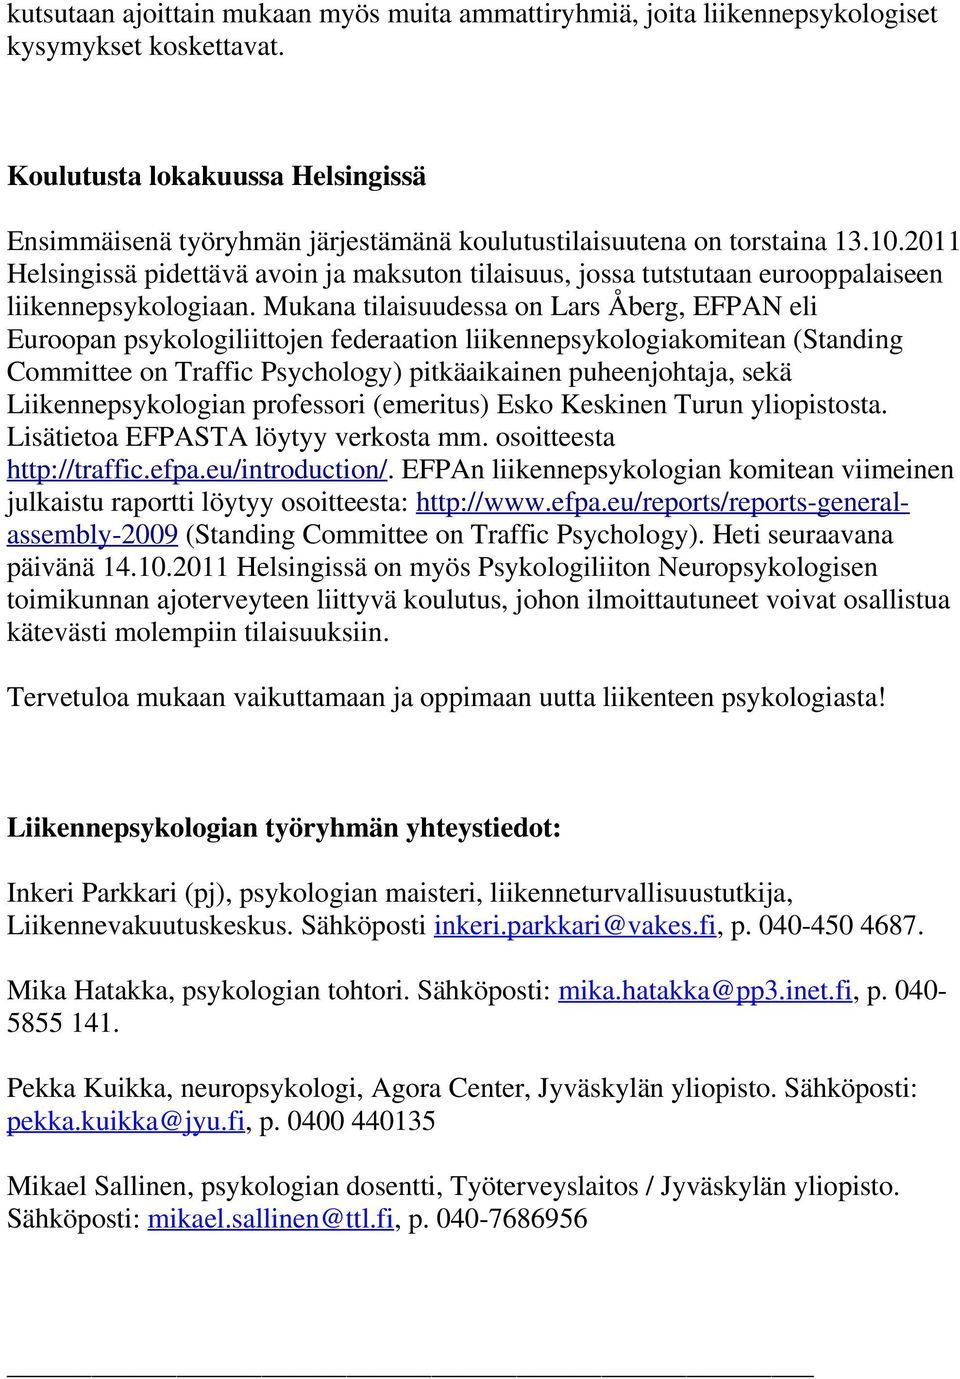 2011 Helsingissä pidettävä avoin ja maksuton tilaisuus, jossa tutstutaan eurooppalaiseen liikennepsykologiaan.